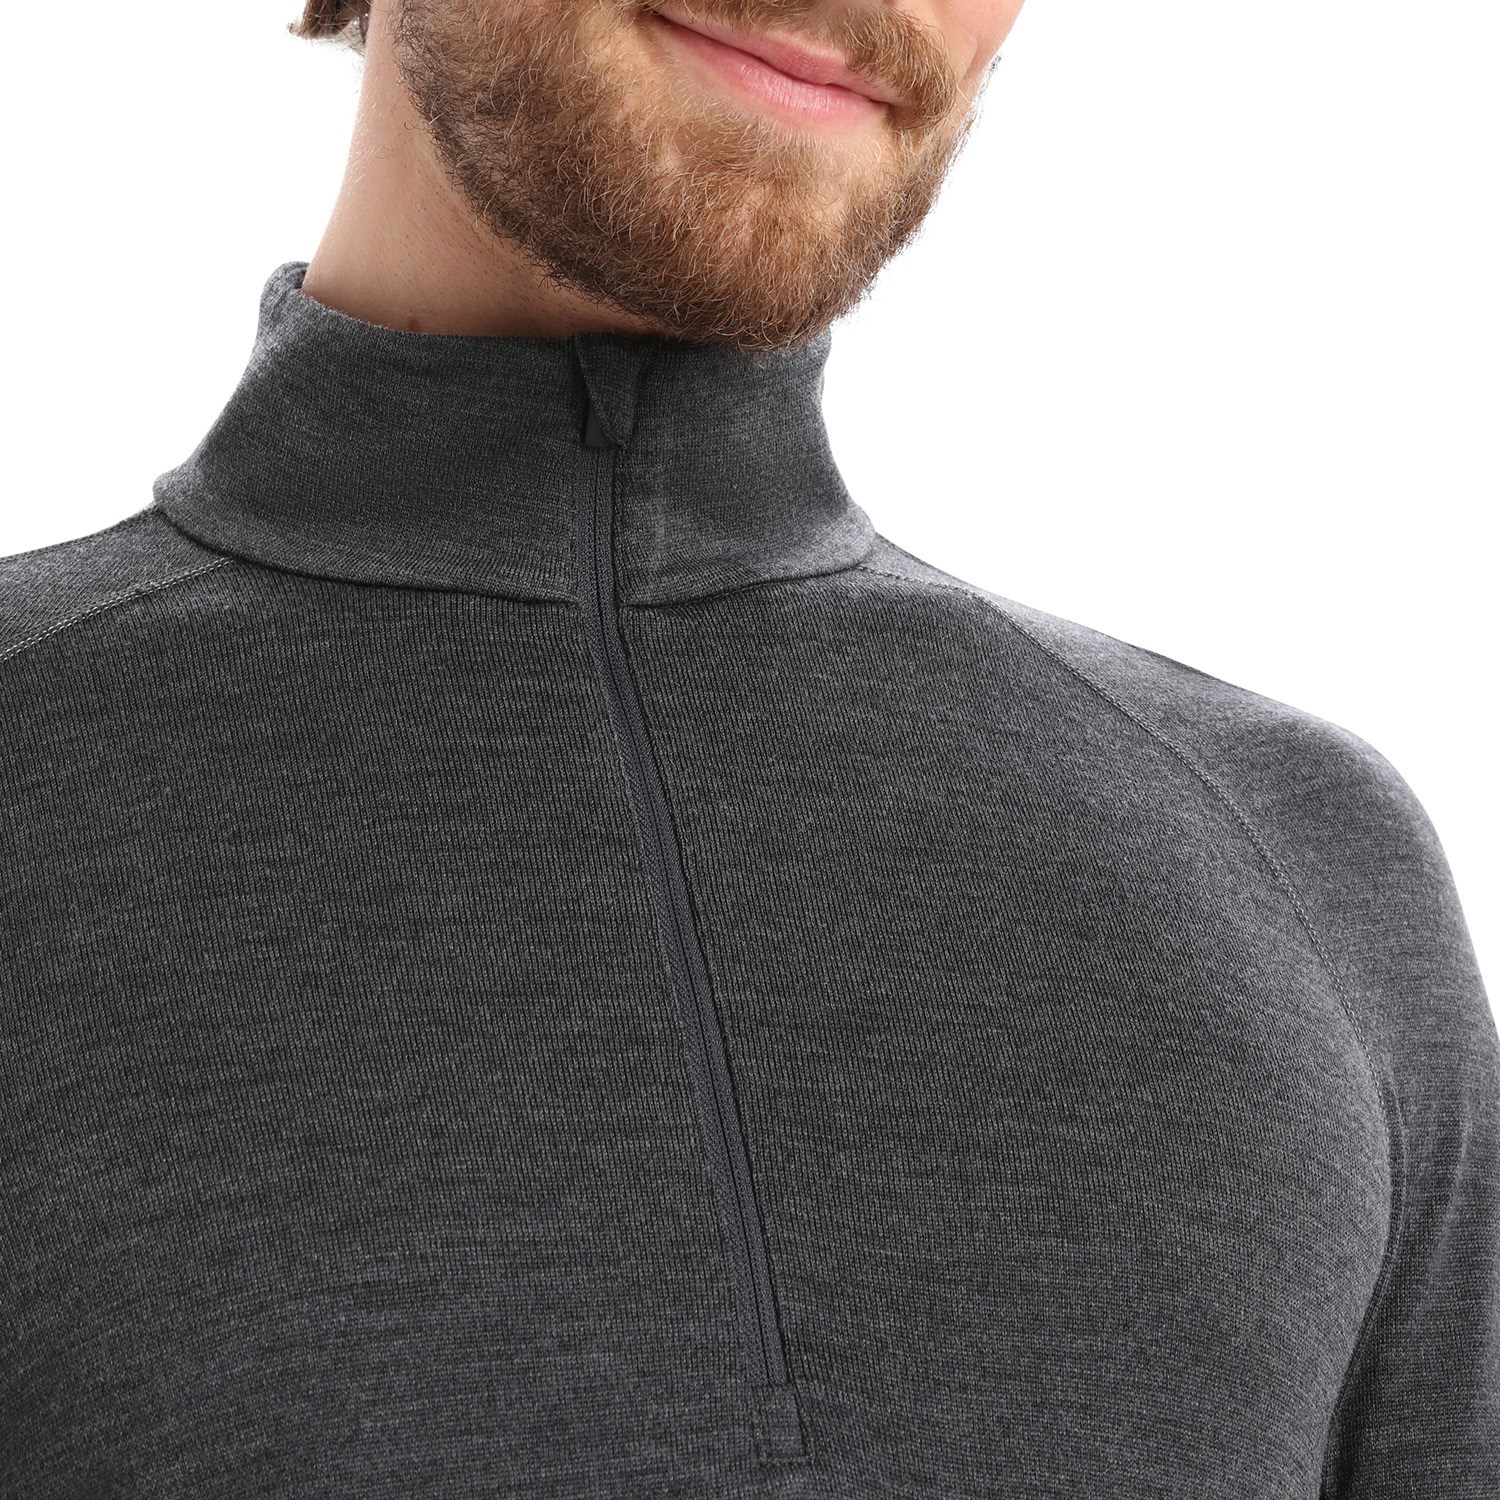 Men's ZoneKnit™ Merino Long Sleeve Zip Top